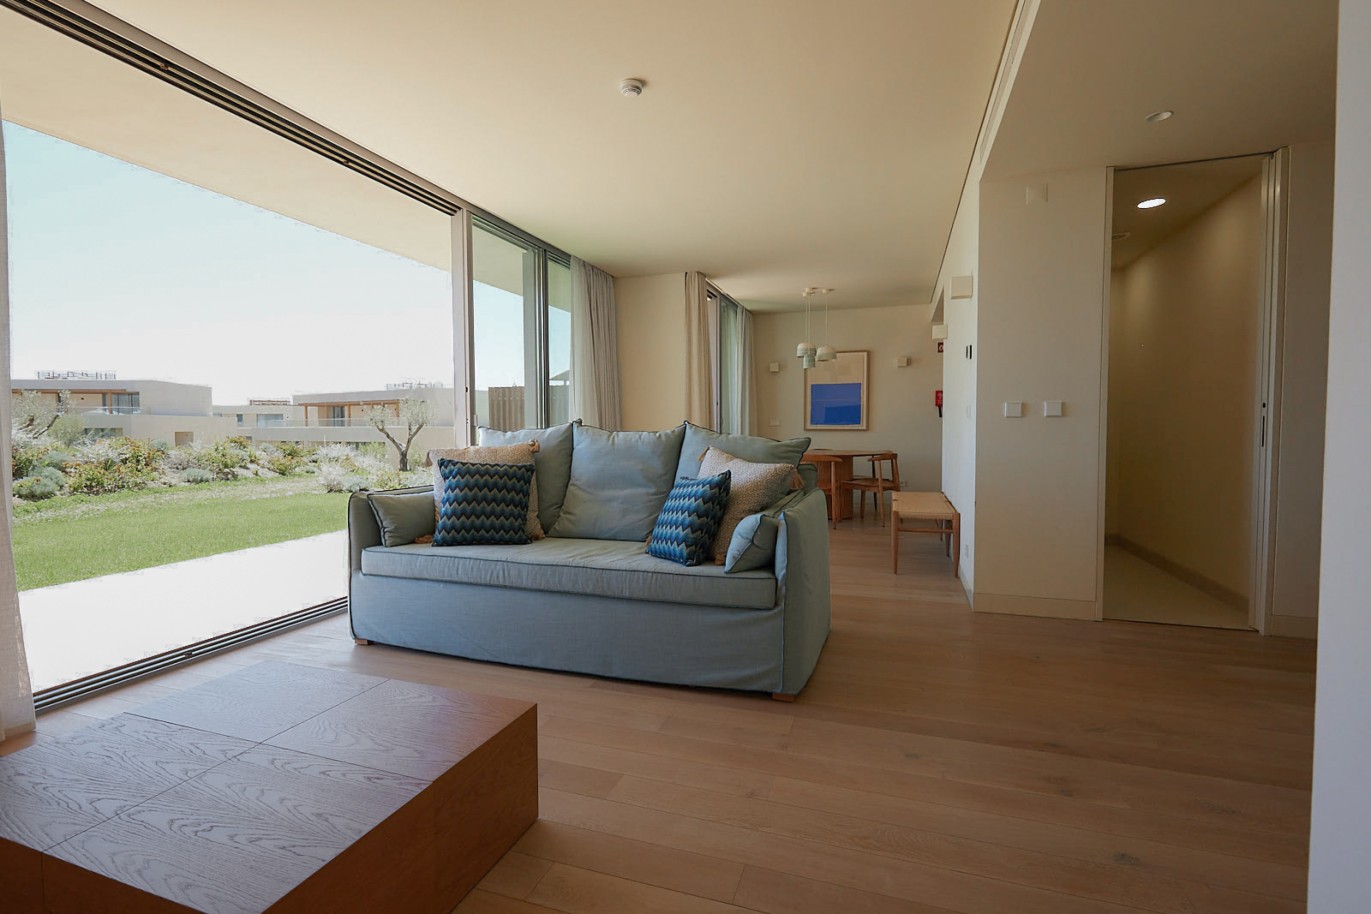 Piso de 2 dormitorios en complejo, en venta en Porches, Algarve_229110